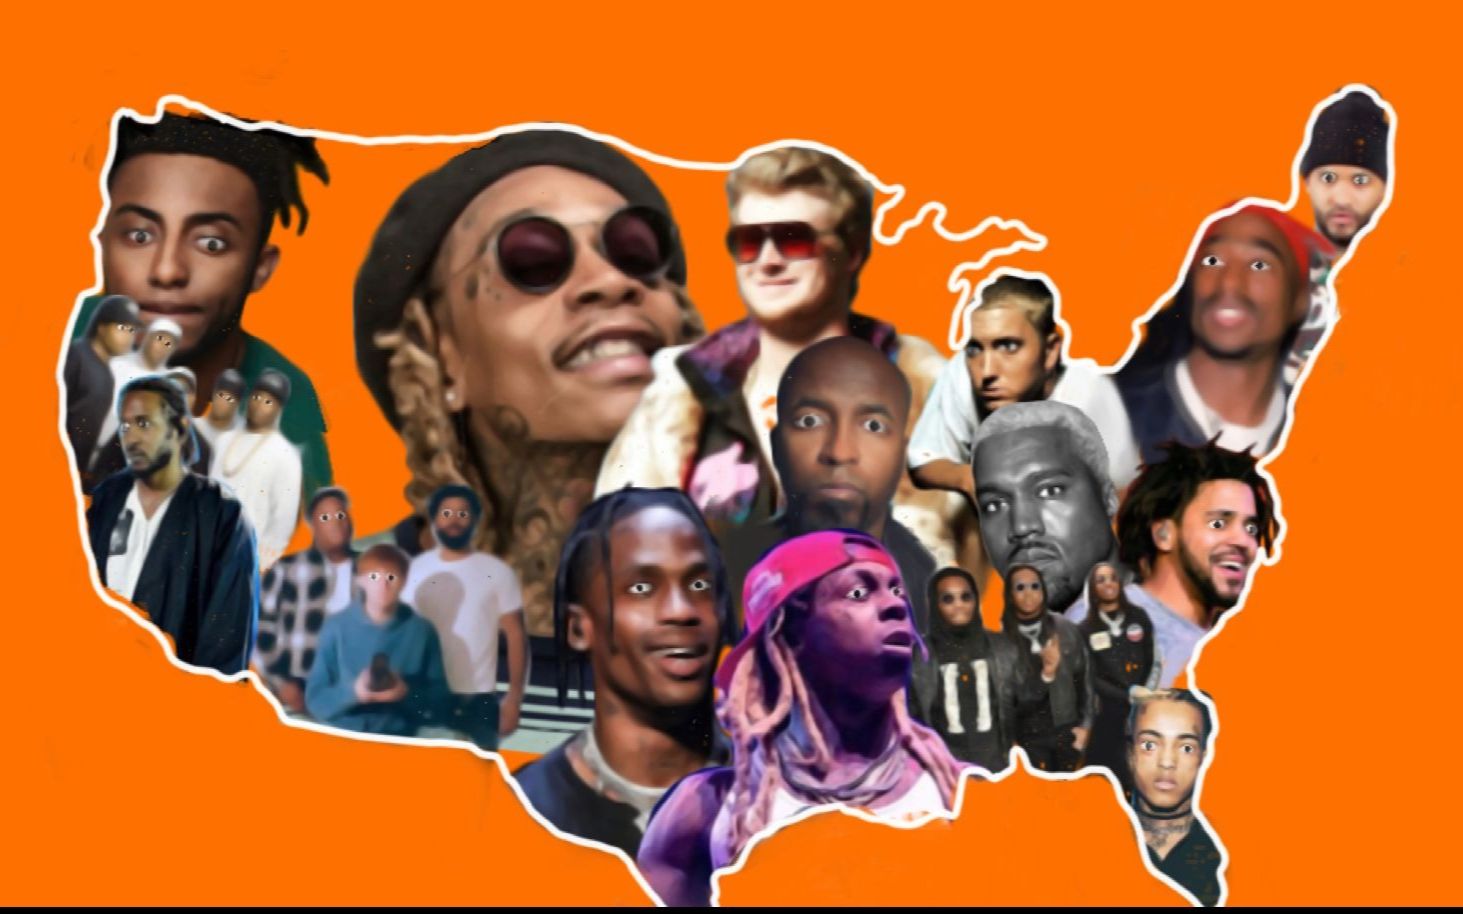 【盘点】这些是美国每个州的最有影响力的rapper吗？